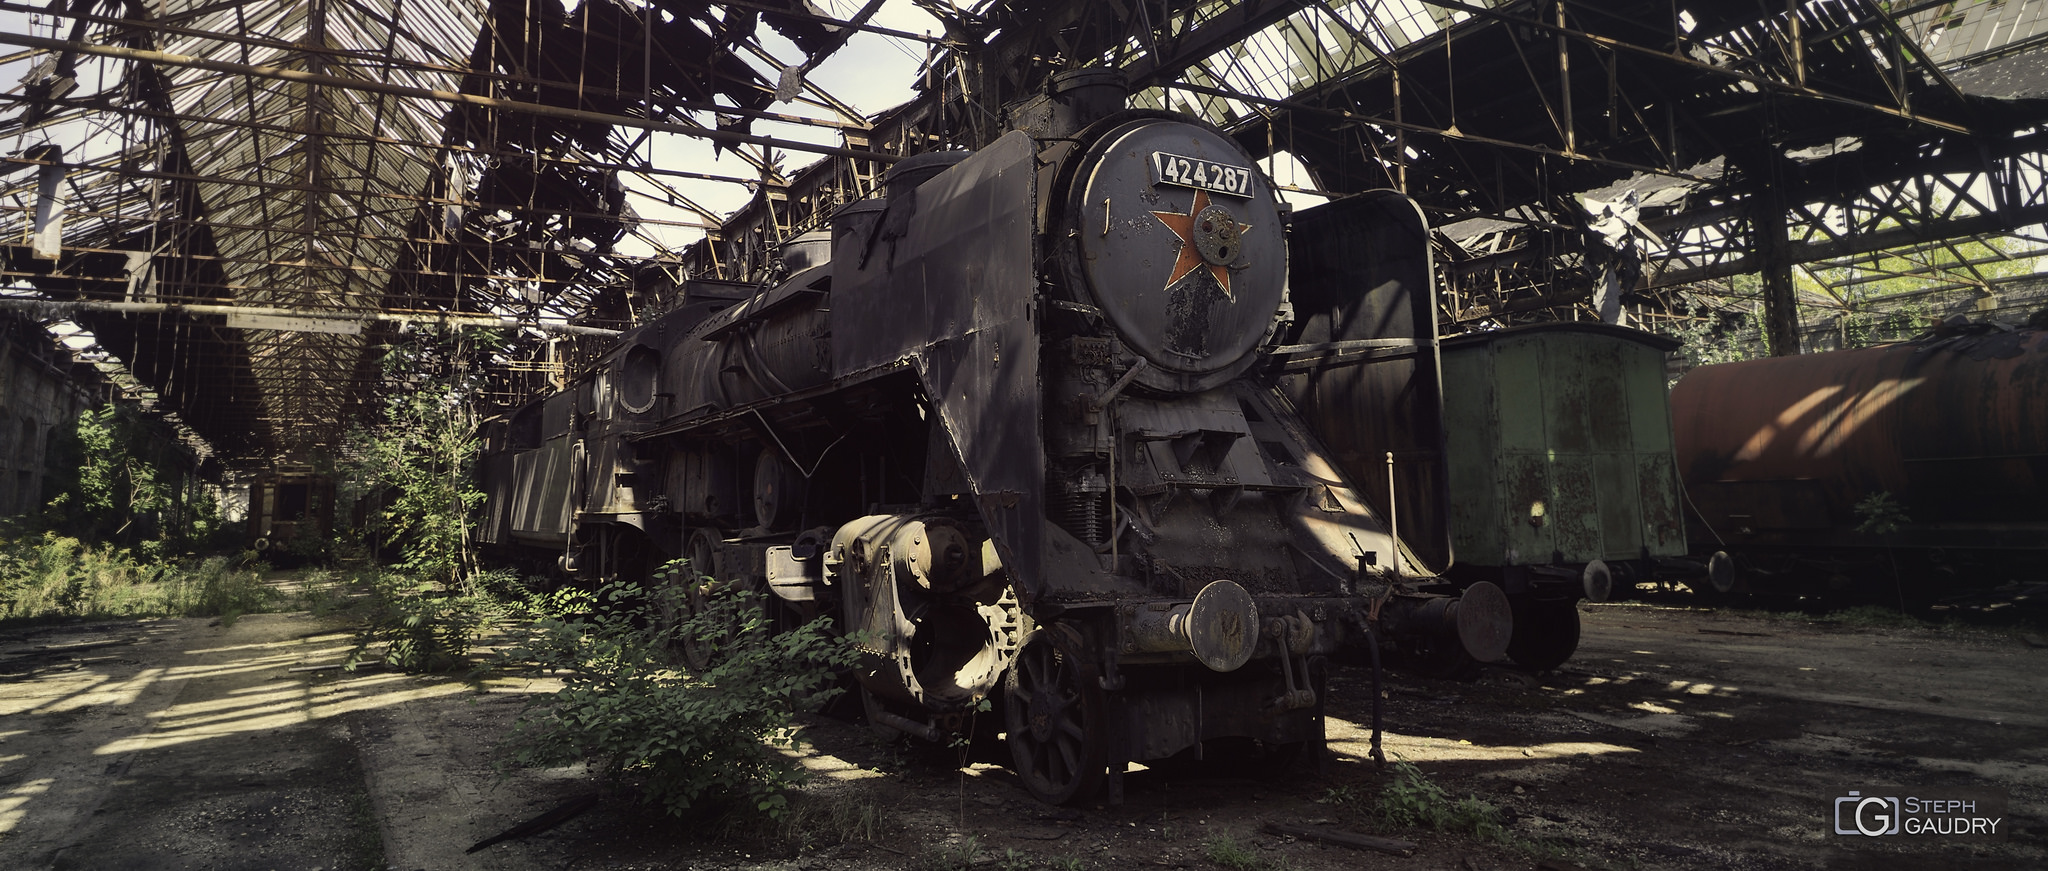 MÁV 424-287 (Abandoned Red star train) [Klicken Sie hier, um die Diashow zu starten]